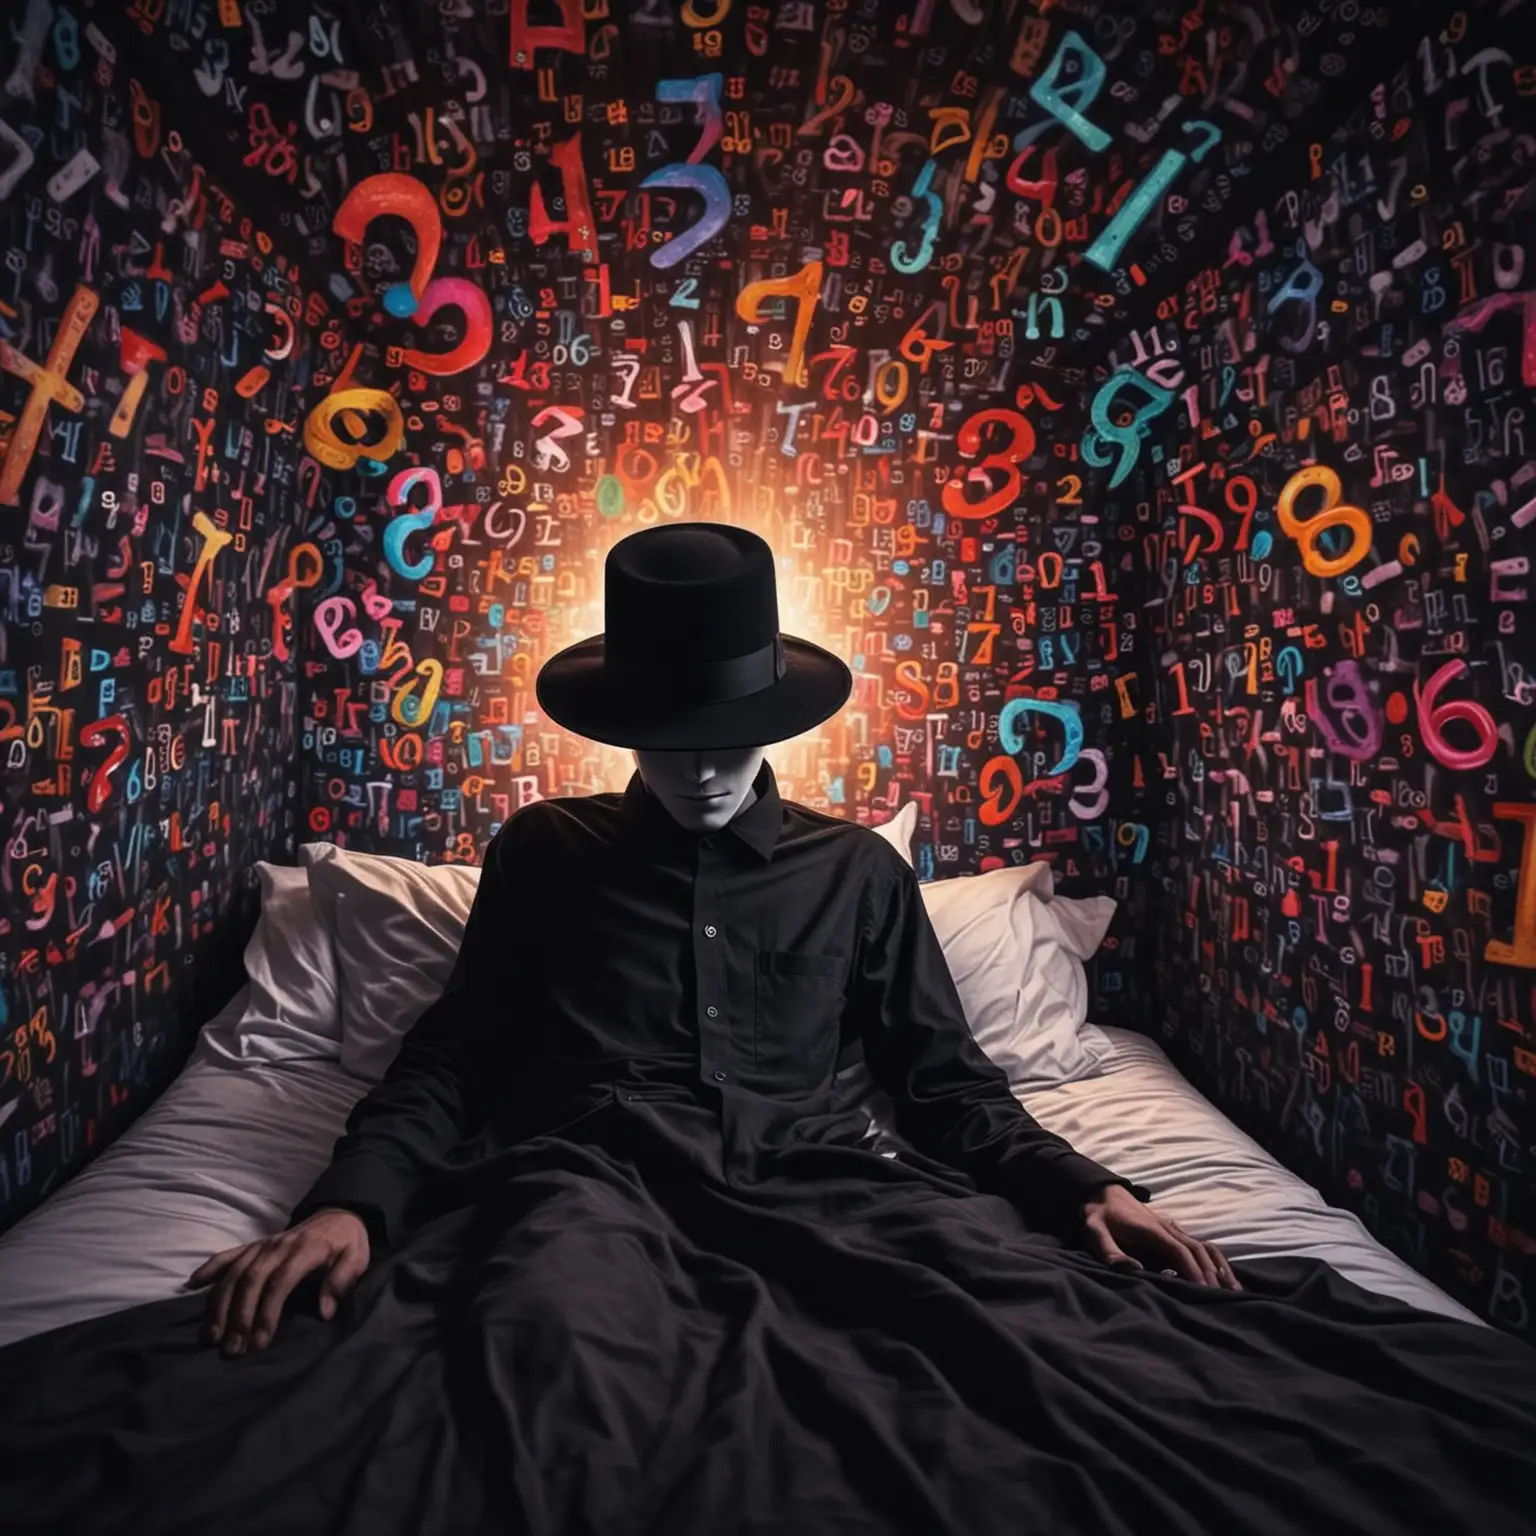 En smal man med svarta kläder och en svart hatt, han ligger på rygg i en säng, det sprutar ut färger och siffror ur huvudet på honom, psykedeliskt, surrealism, super detaljer, dynamiskt, psykonaut, hallucinogent 